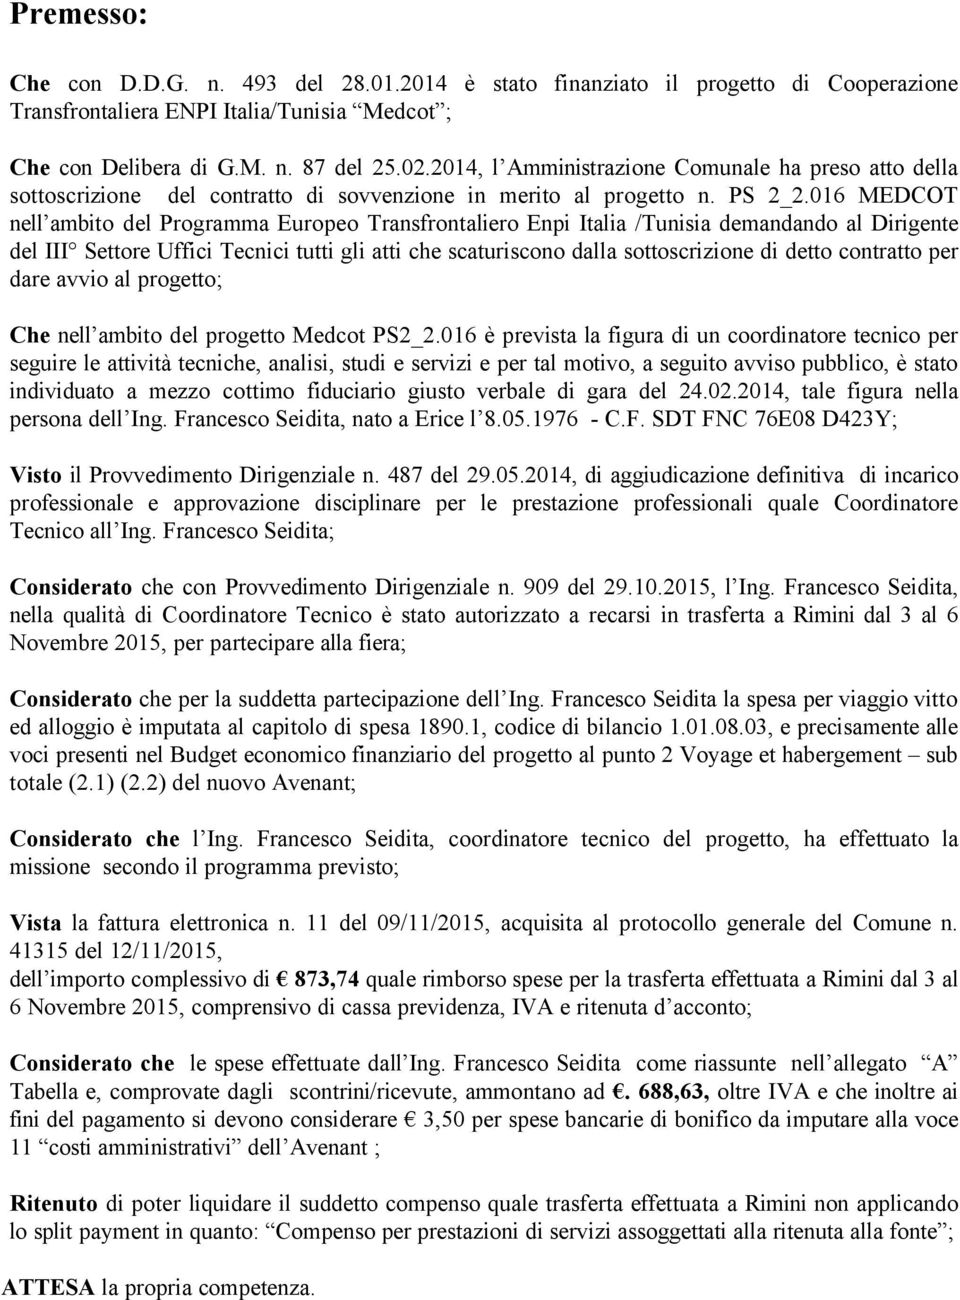 016 MEDCOT nell ambito del Programma Europeo Transfrontaliero Enpi Italia /Tunisia demandando al Dirigente del III Settore Uffici Tecnici tutti gli atti che scaturiscono dalla sottoscrizione di detto